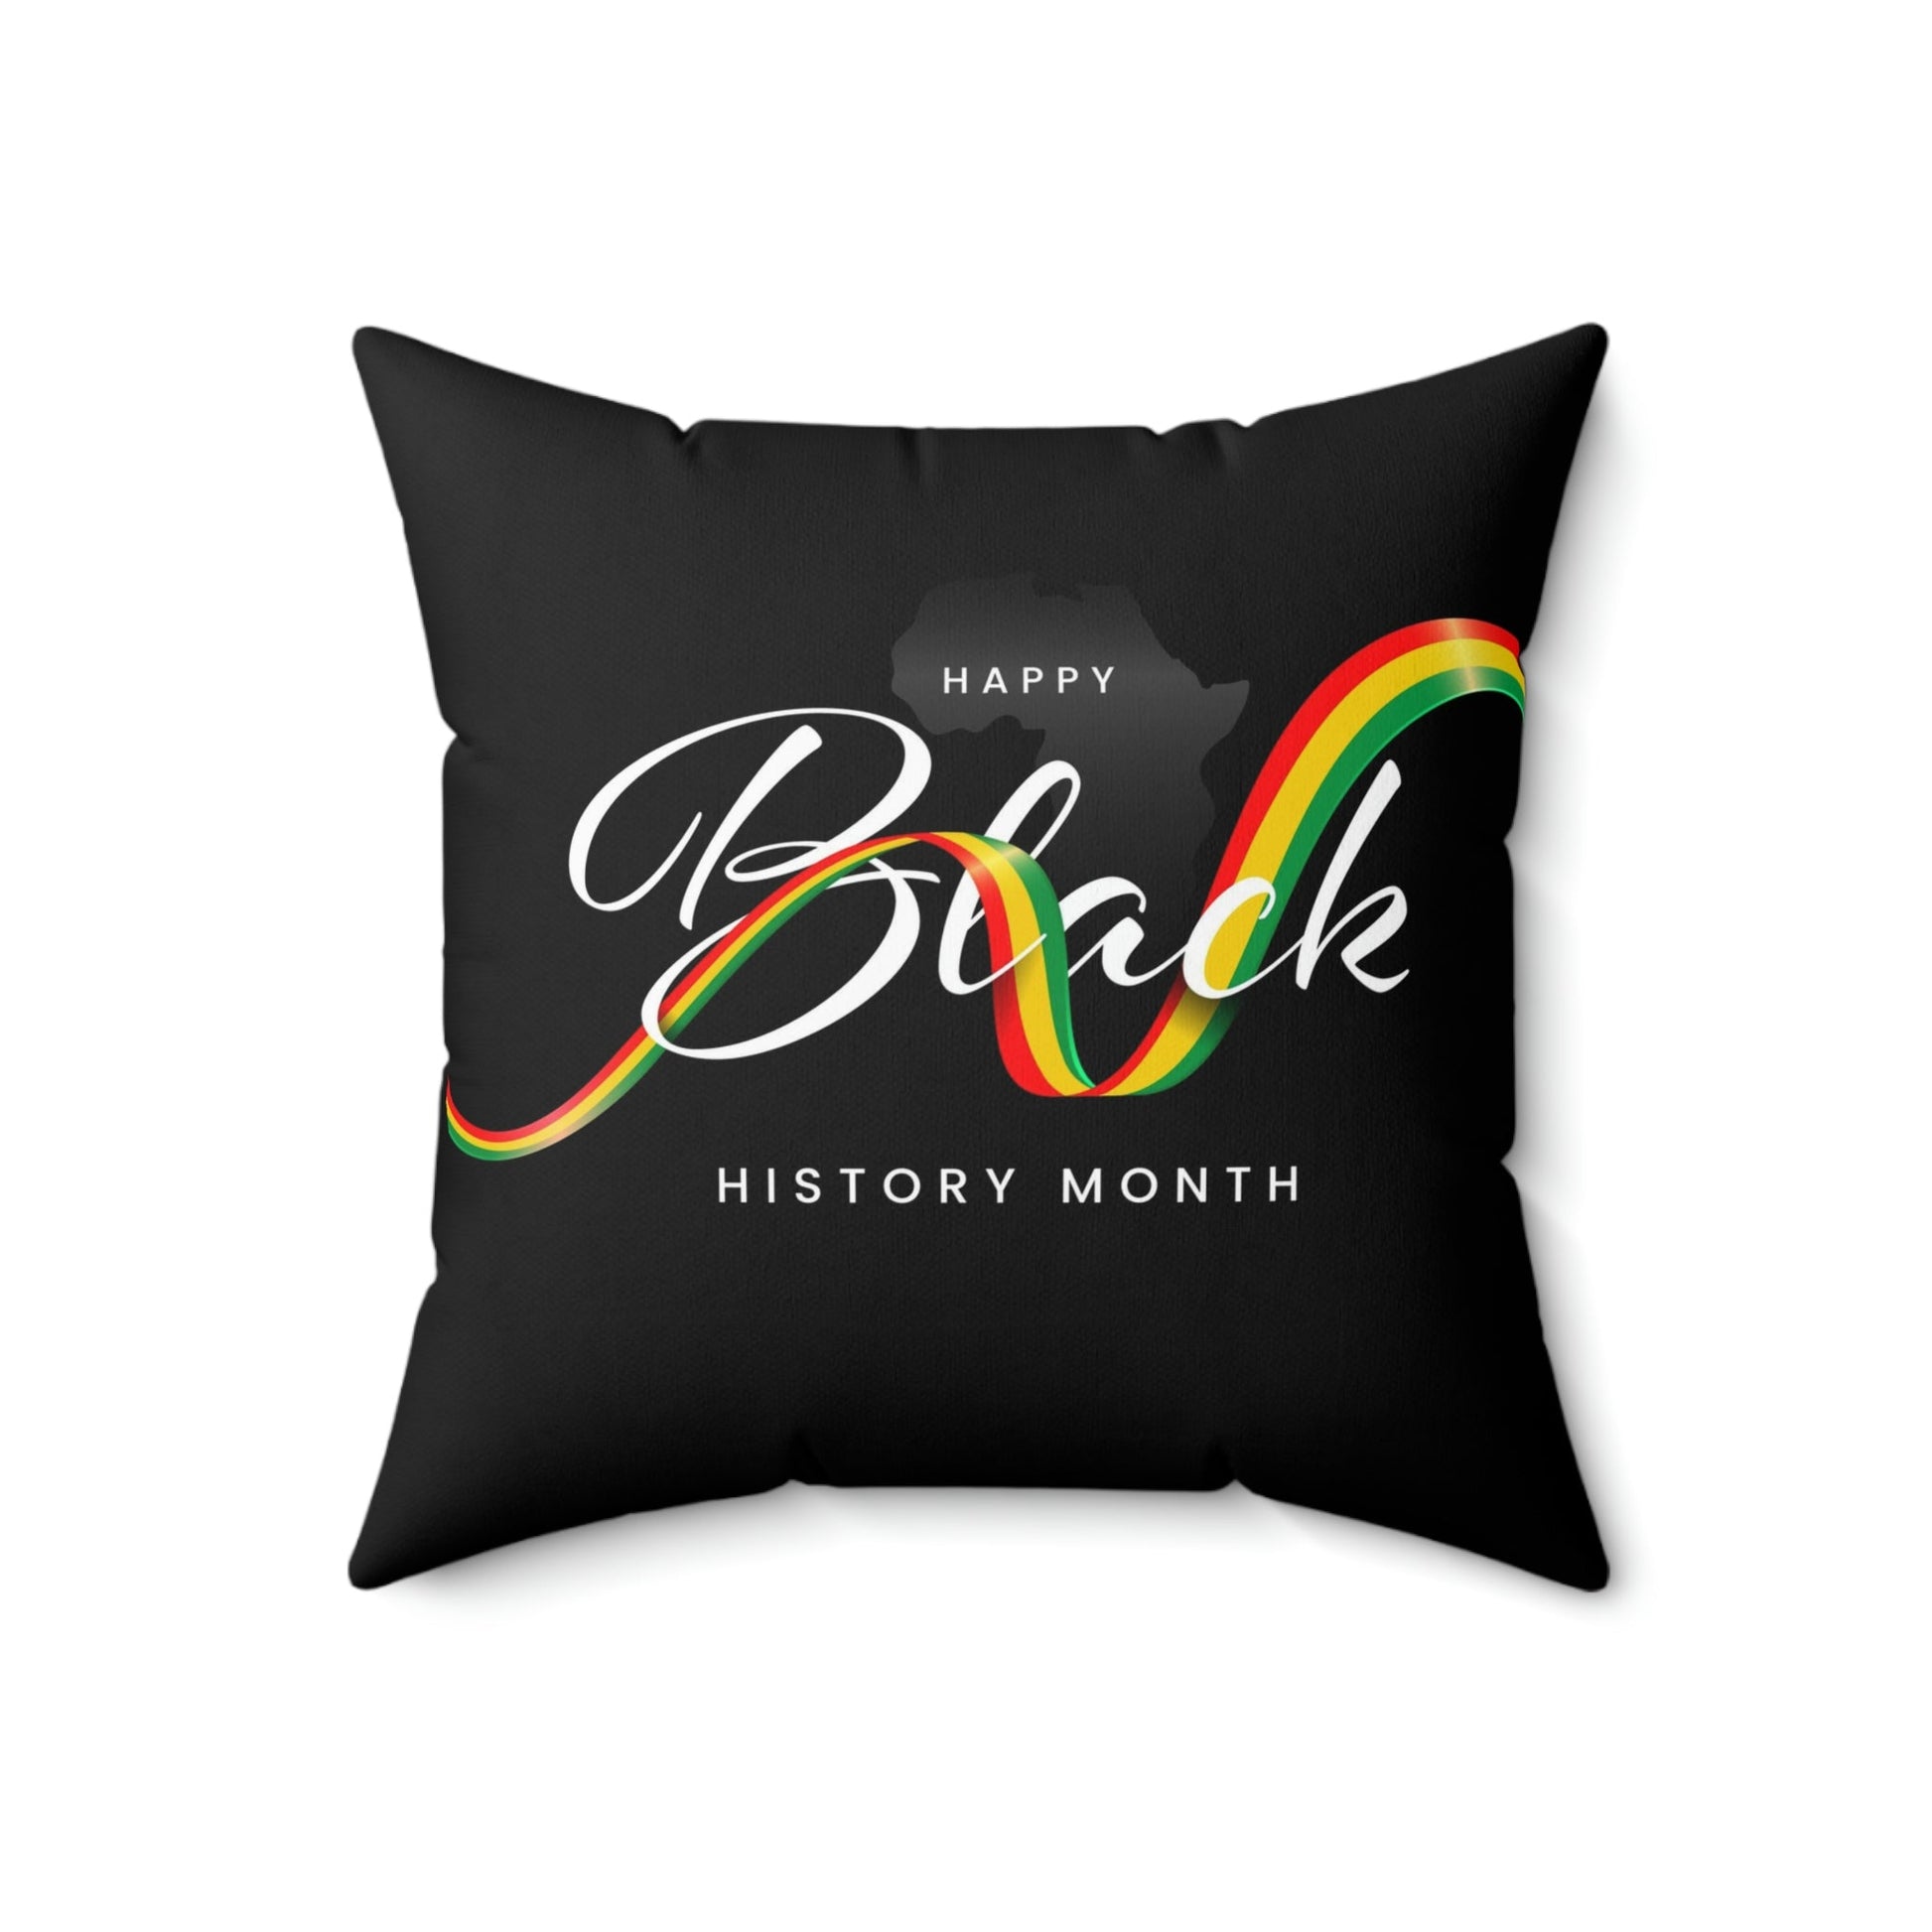 T4x Black History Month Square Pillow - T4x Quadruple Love